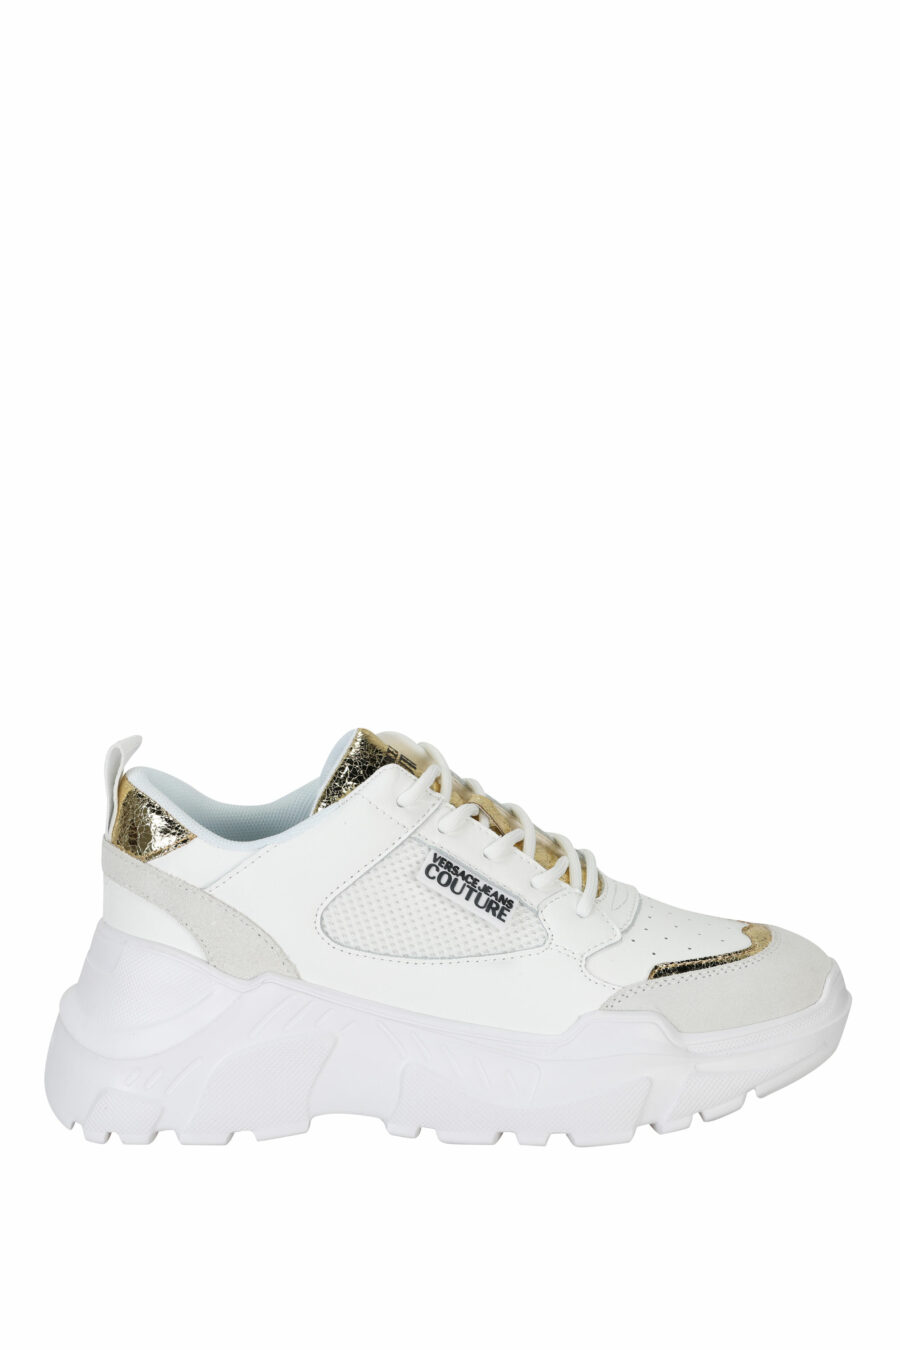 Zapatillas blancas mix con detalles dorados y plataforma - 8052019604764